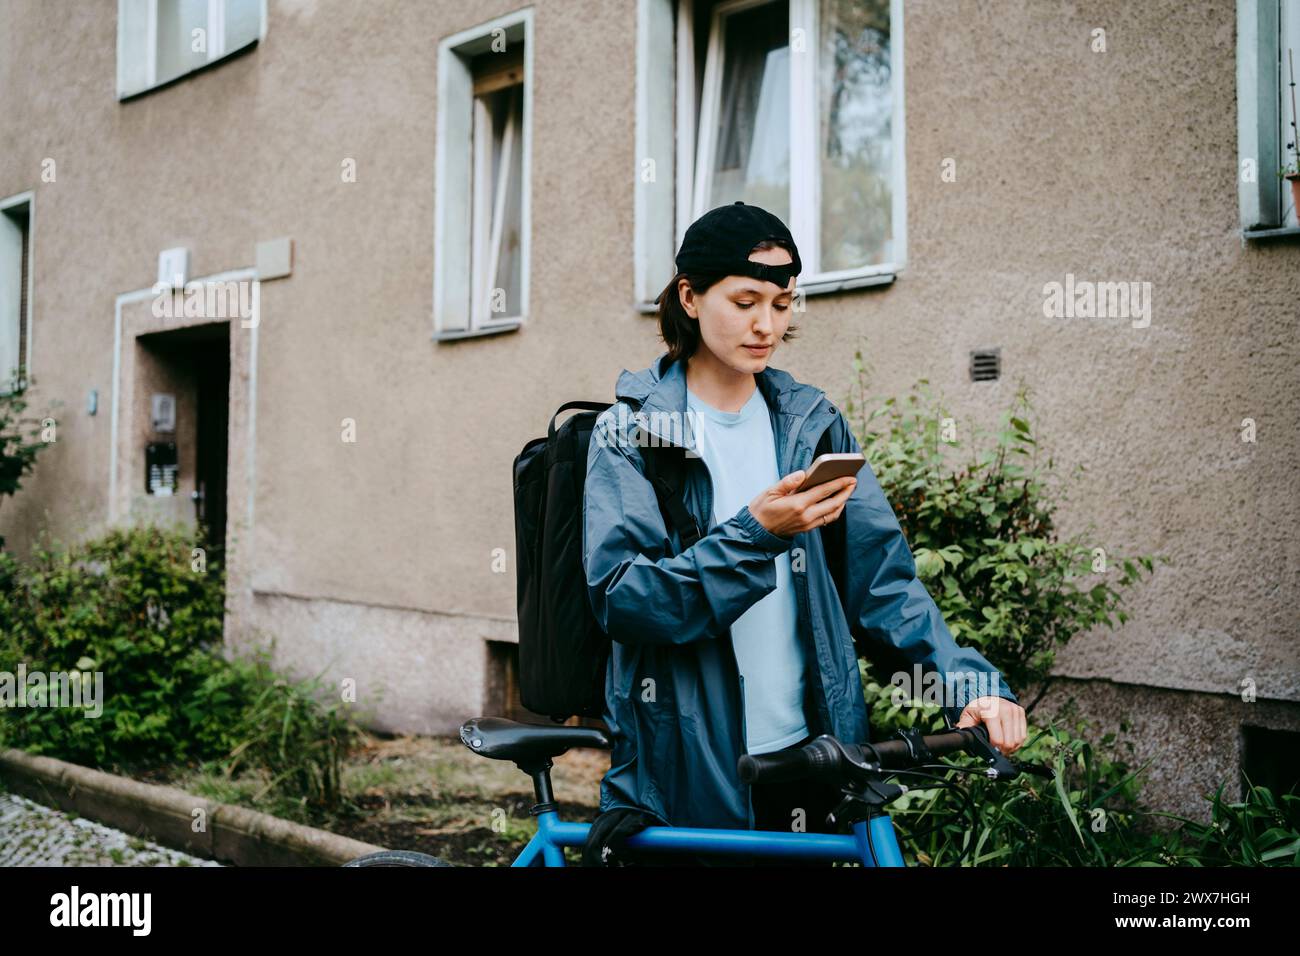 Weibliche Radfahrerin, die ihr Smartphone benutzt, während sie mit dem Fahrrad in der Nähe des Gebäudes steht Stockfoto